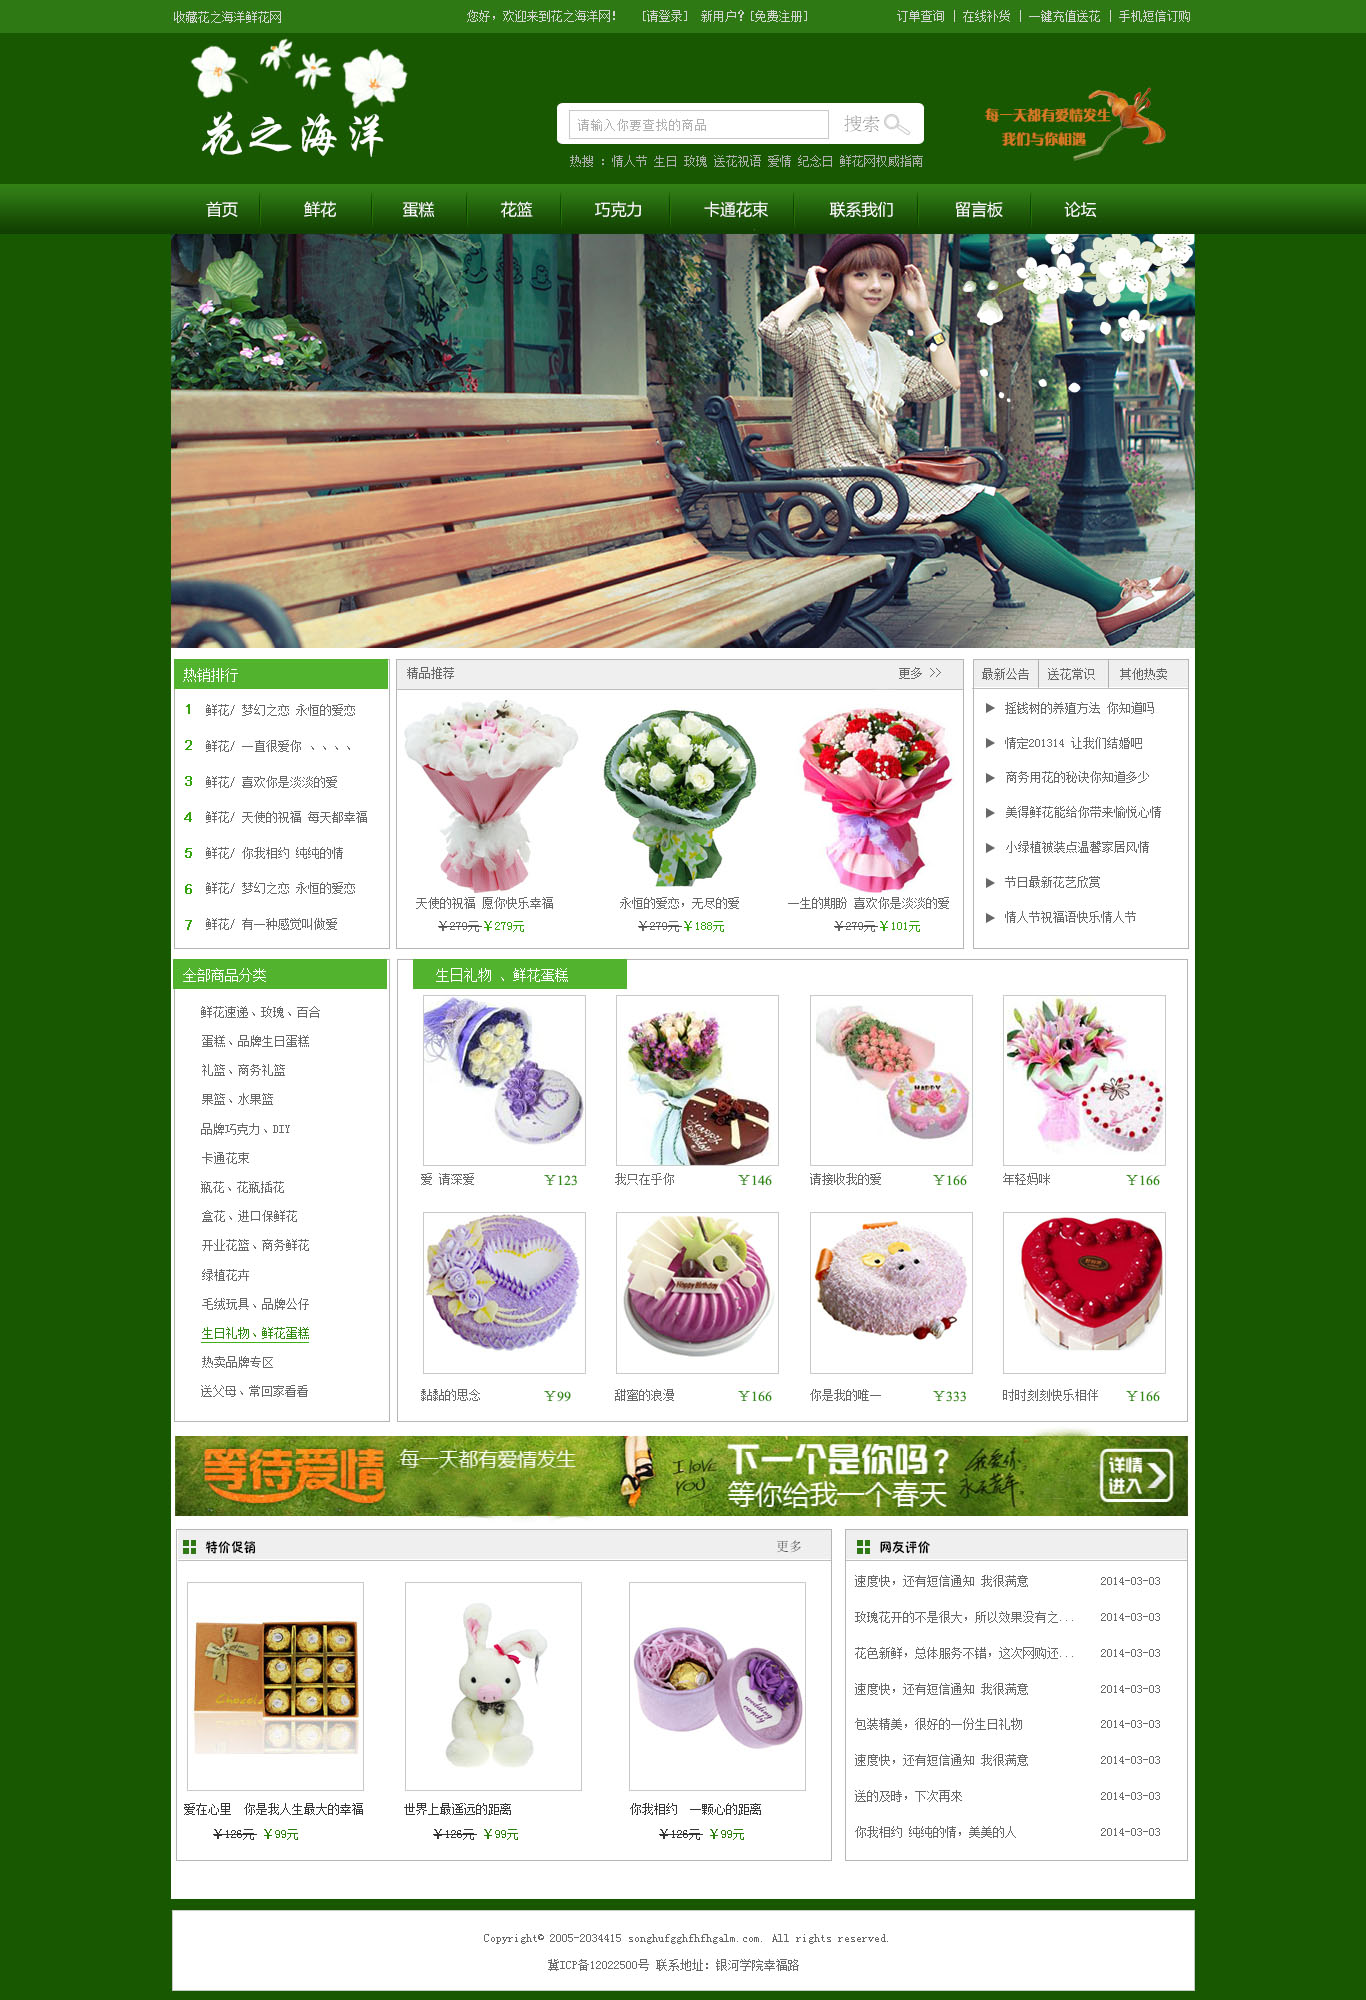 绿色的鲜花商城网站模板psd素材下载_商城网站模板